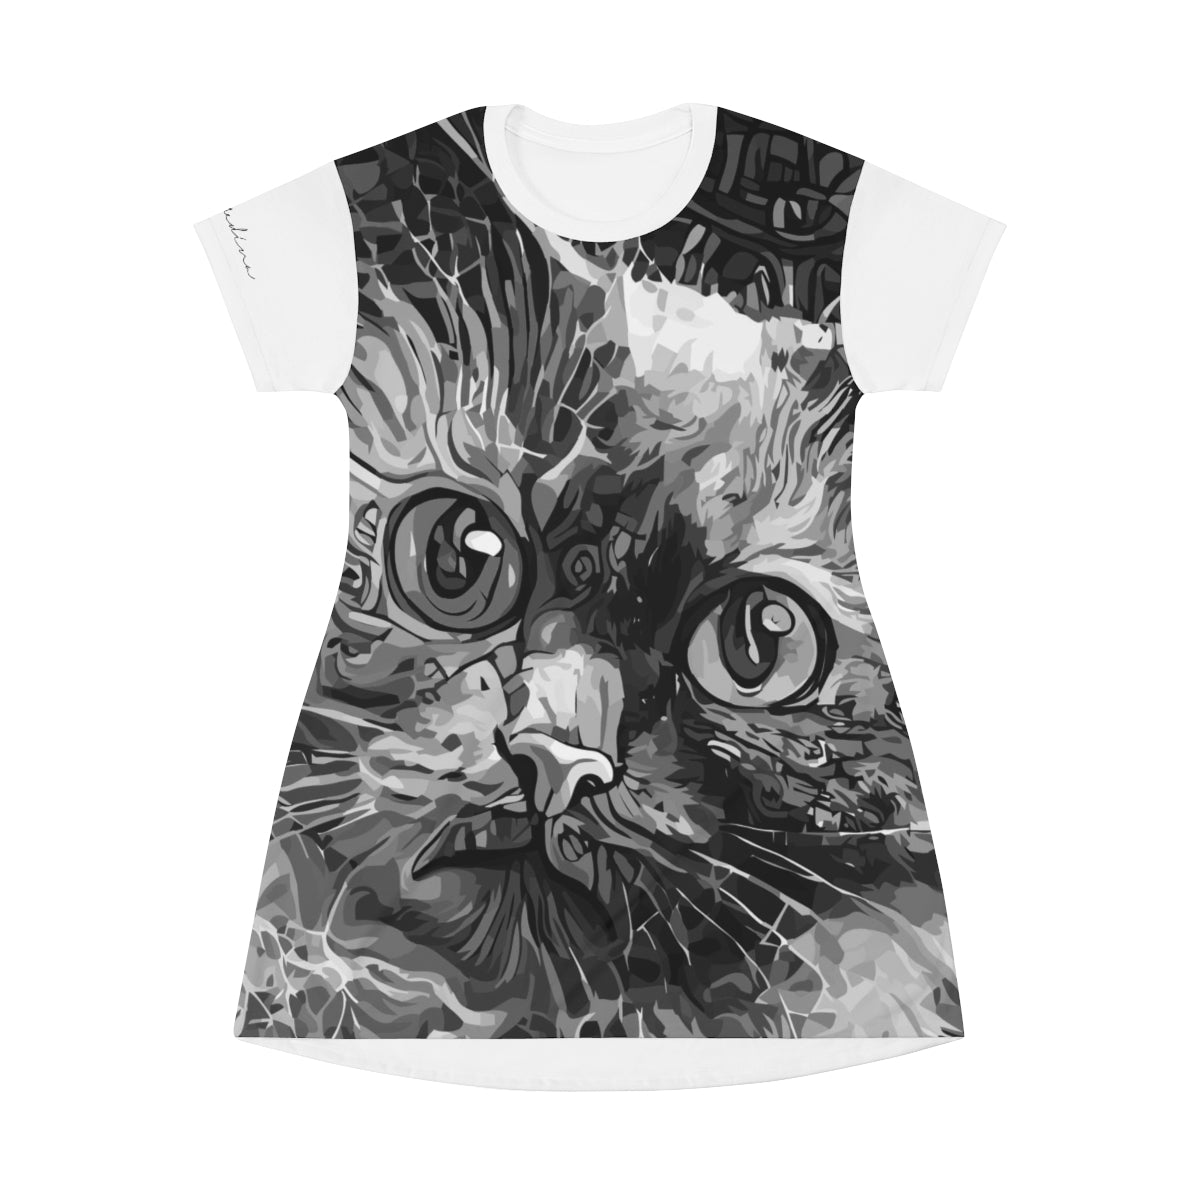 Shirtdress, Classic Kitty